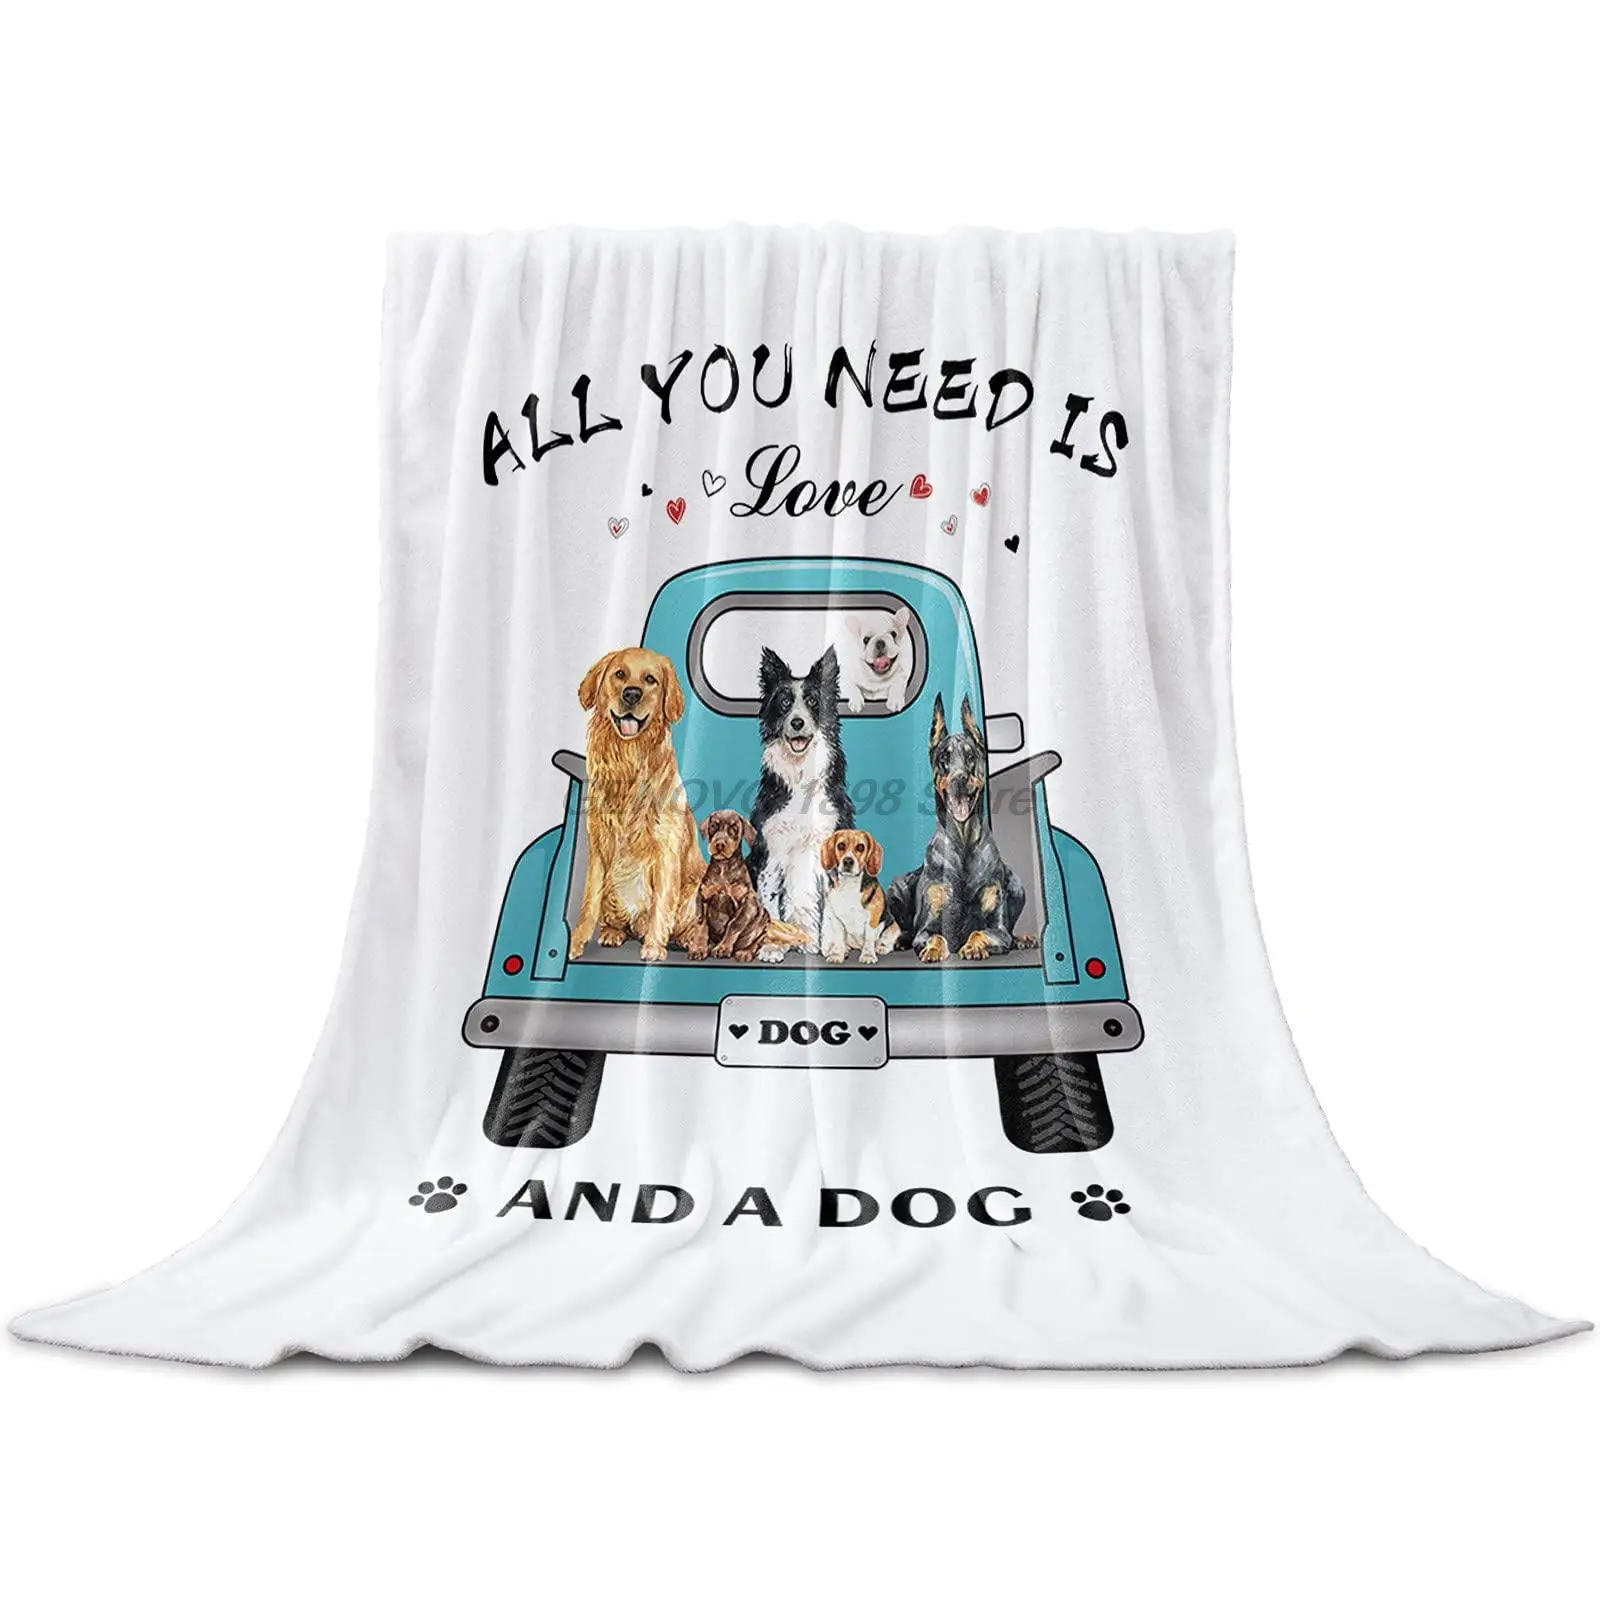 

Одеяло флисовое Полноразмерное для собаки, легкое фланелевое одеяло для кушетки, кровати, гостиной, теплое пушистое плюшевое одеяло